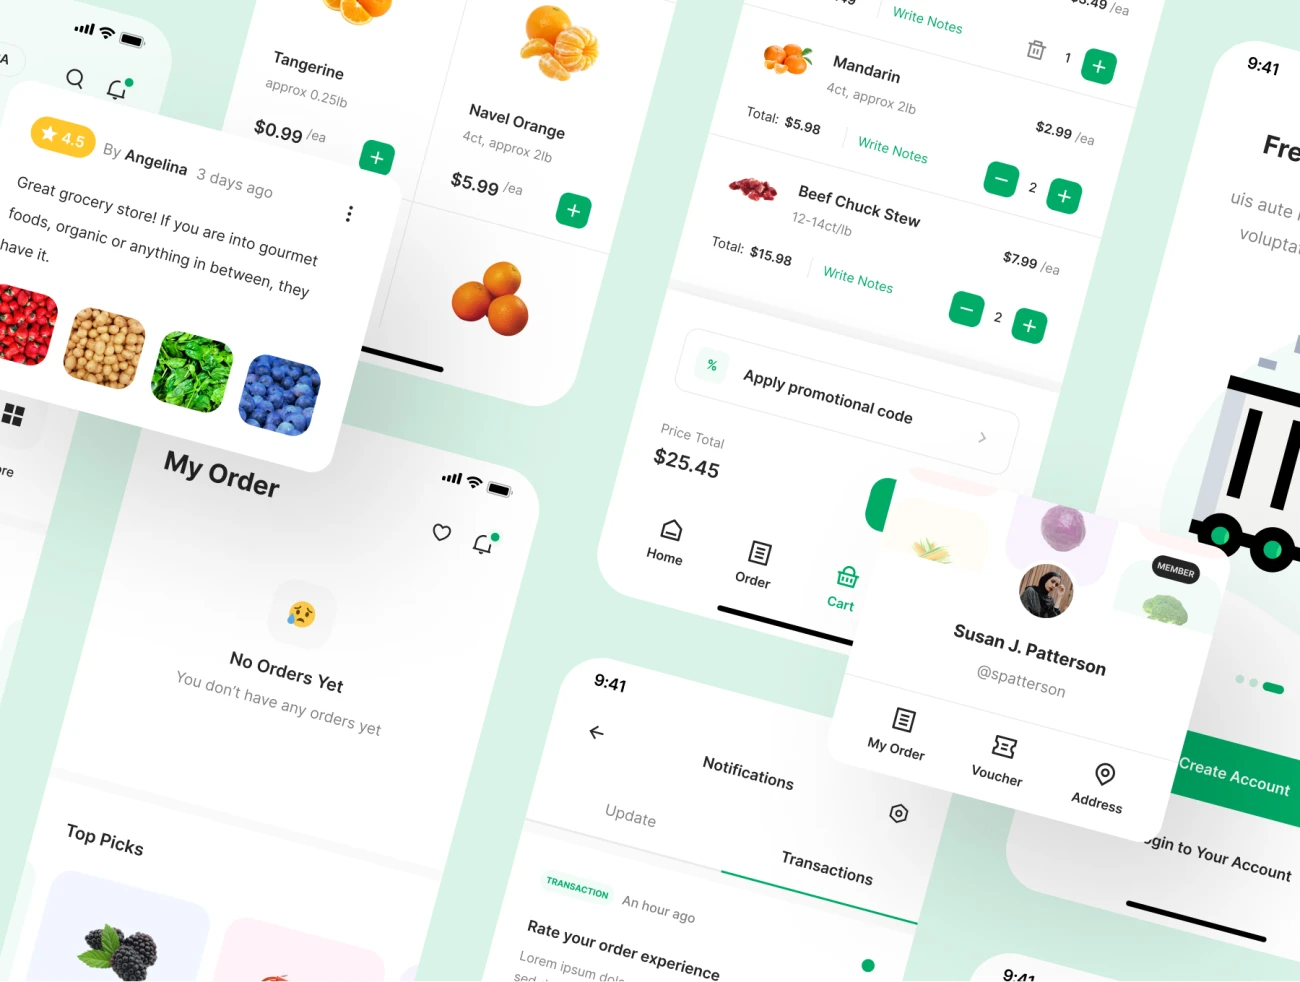 70屏高质量蔬菜水果生鲜日用百货采购应用UI设计套件素材 Growcery – Grocery App UI Kit .figma插图3